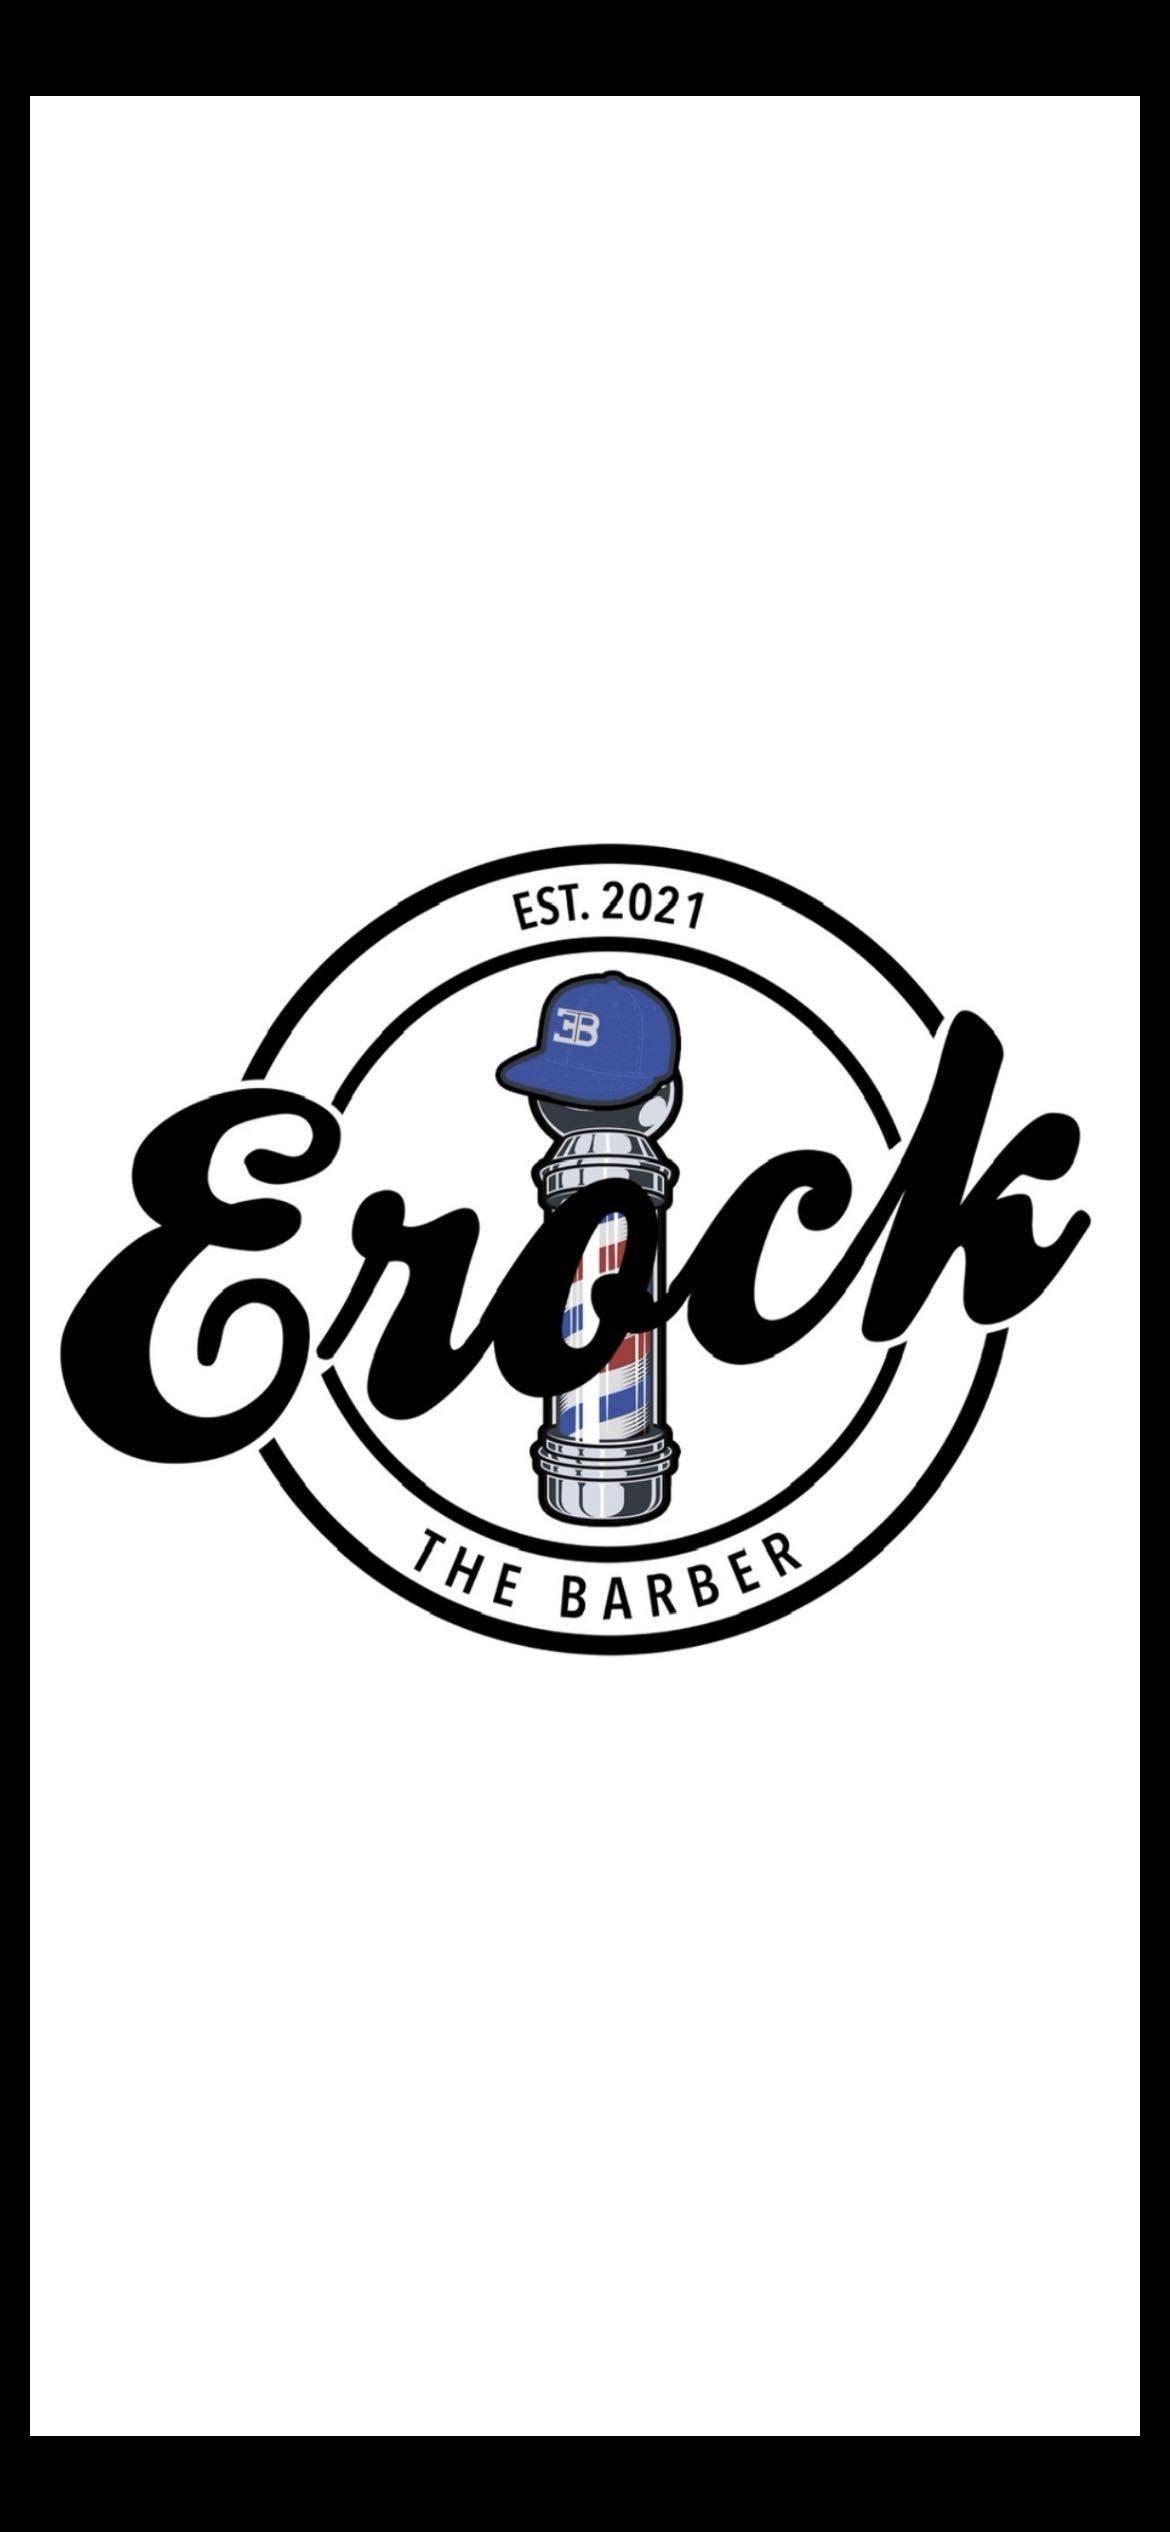 Erock The Barber, 1437 N Hacienda Blvd, La Puente, 91744